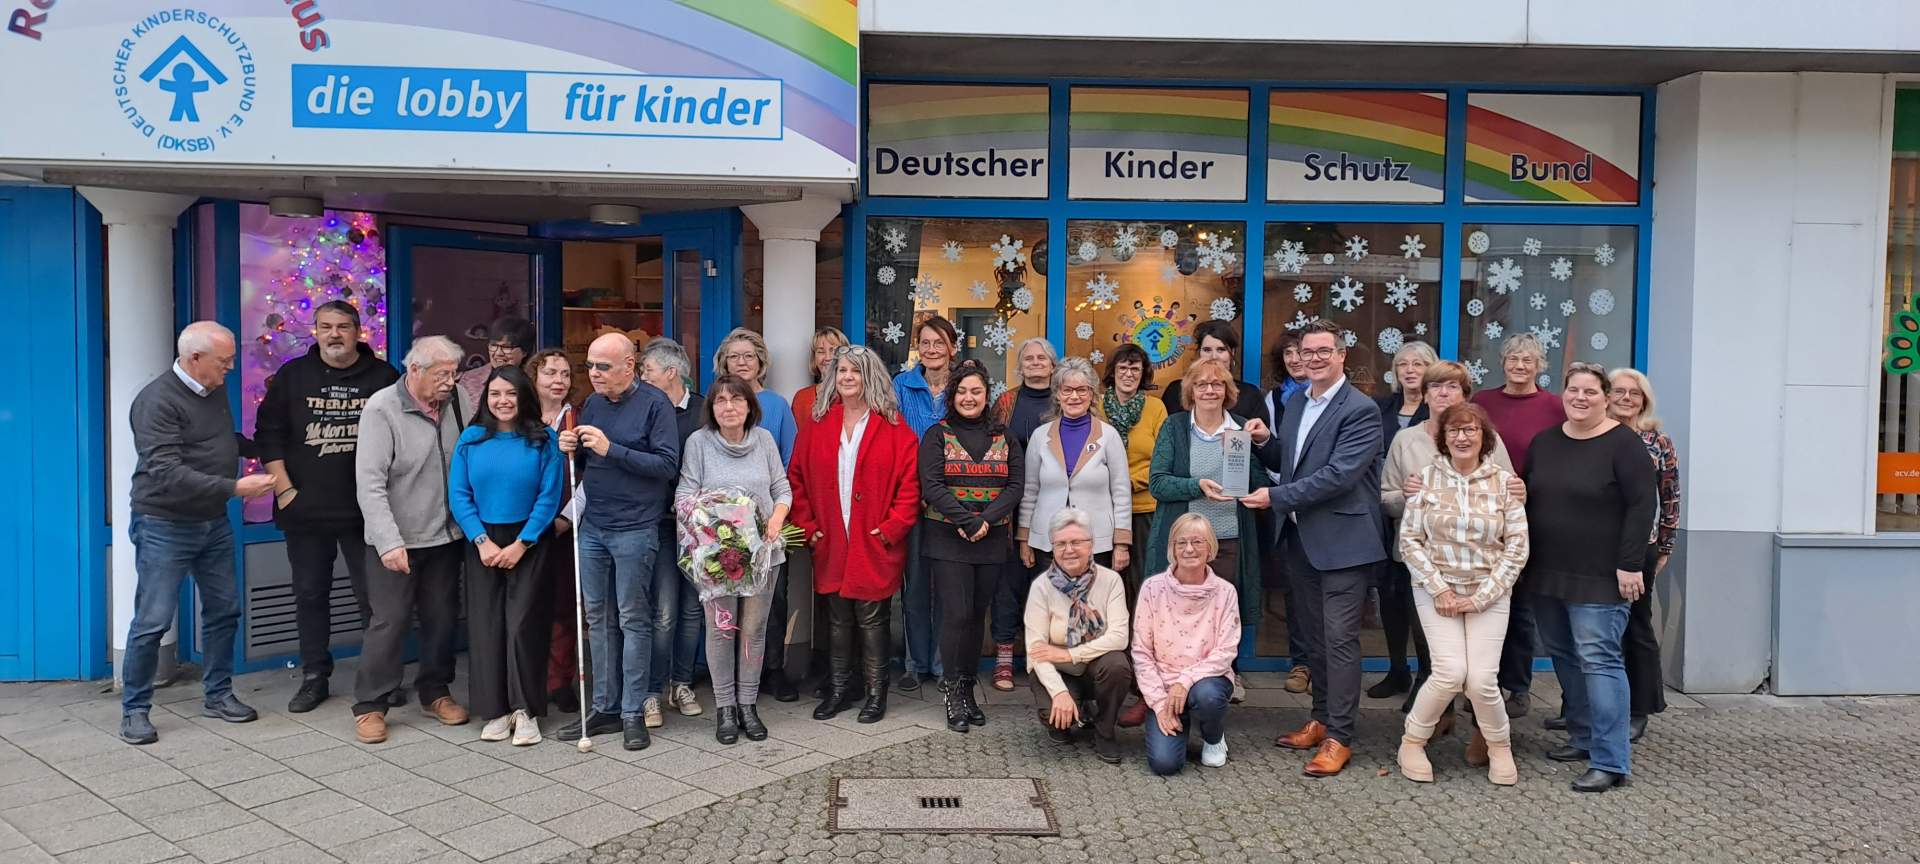 Kinderfreundliche Kommune Neuwied prämiert langjähriges Engagement